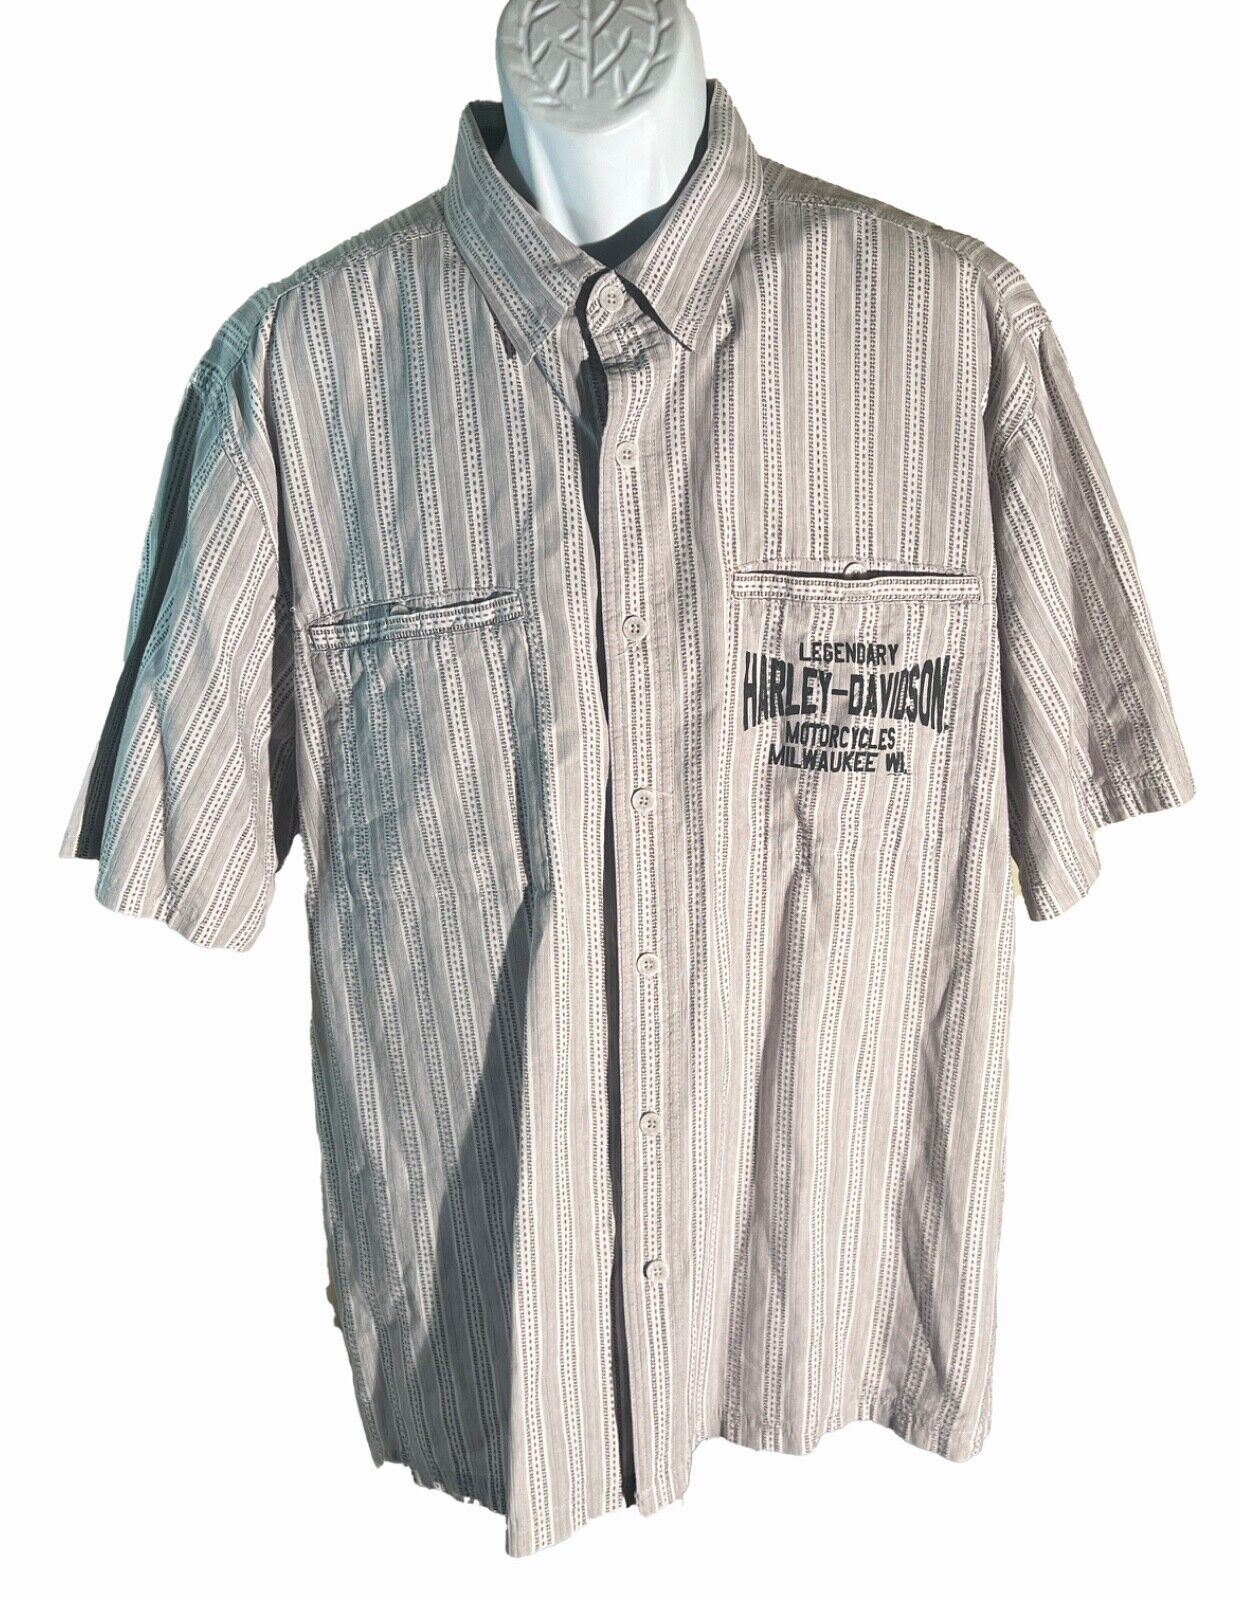 LEGENDARY HARLEY-DAVIDSON Men\'s Shirt Sleeve Button Down Shirt Gray XL